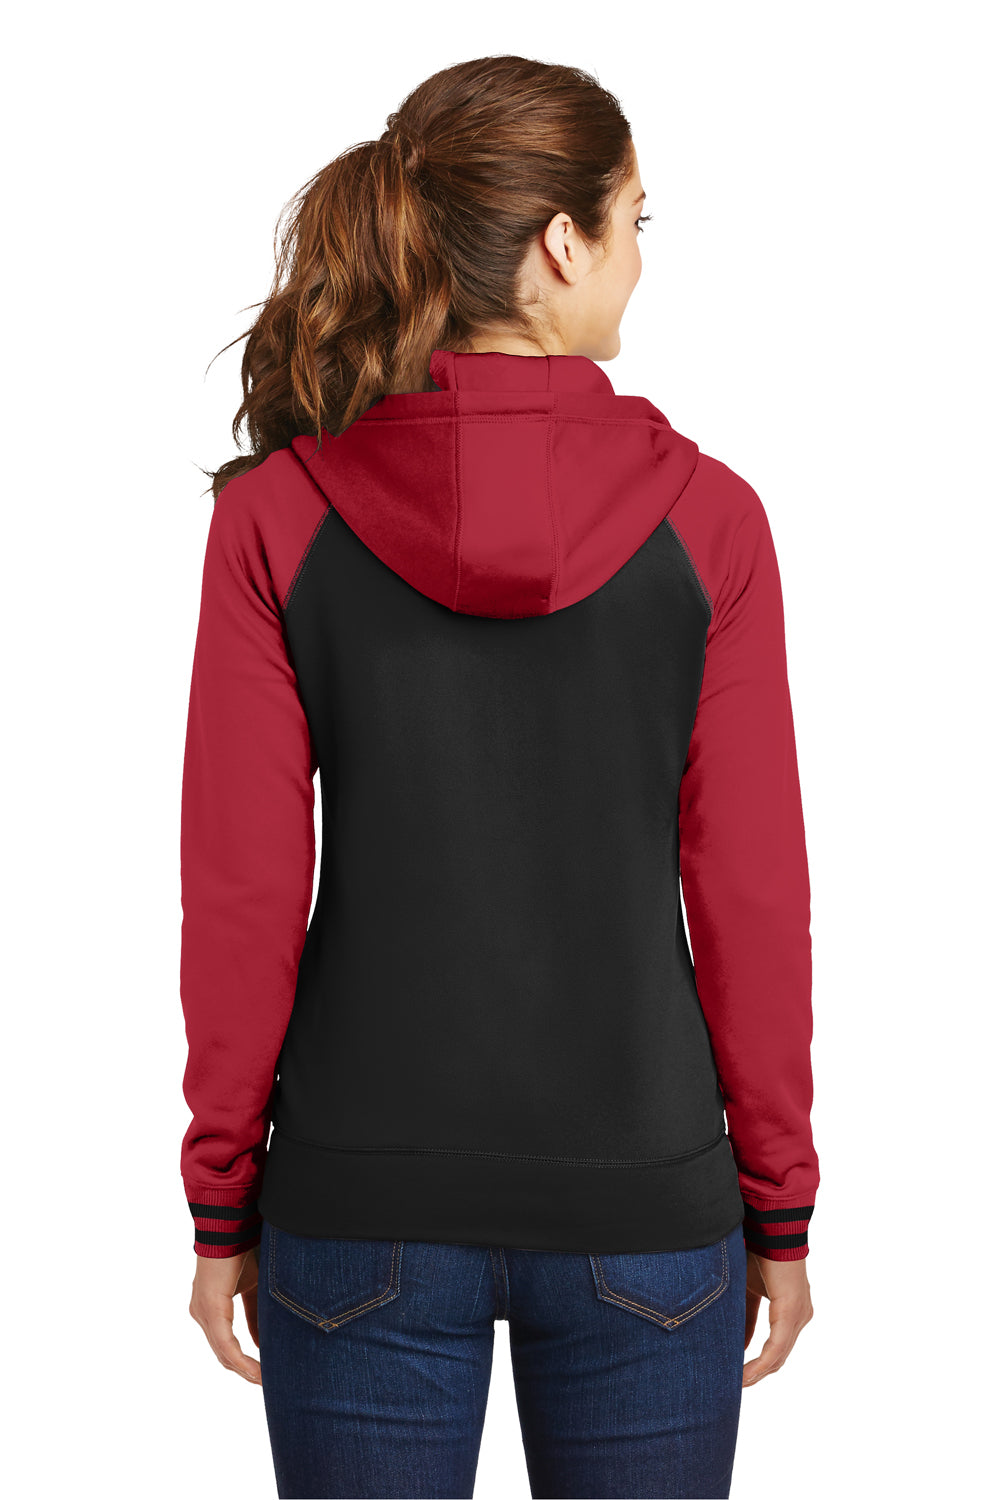 Sport-Tek LST236 Womens Sport-Wick Moisture Wicking Fleece Hooded Sweatshirt Hoodie Black/Red Back